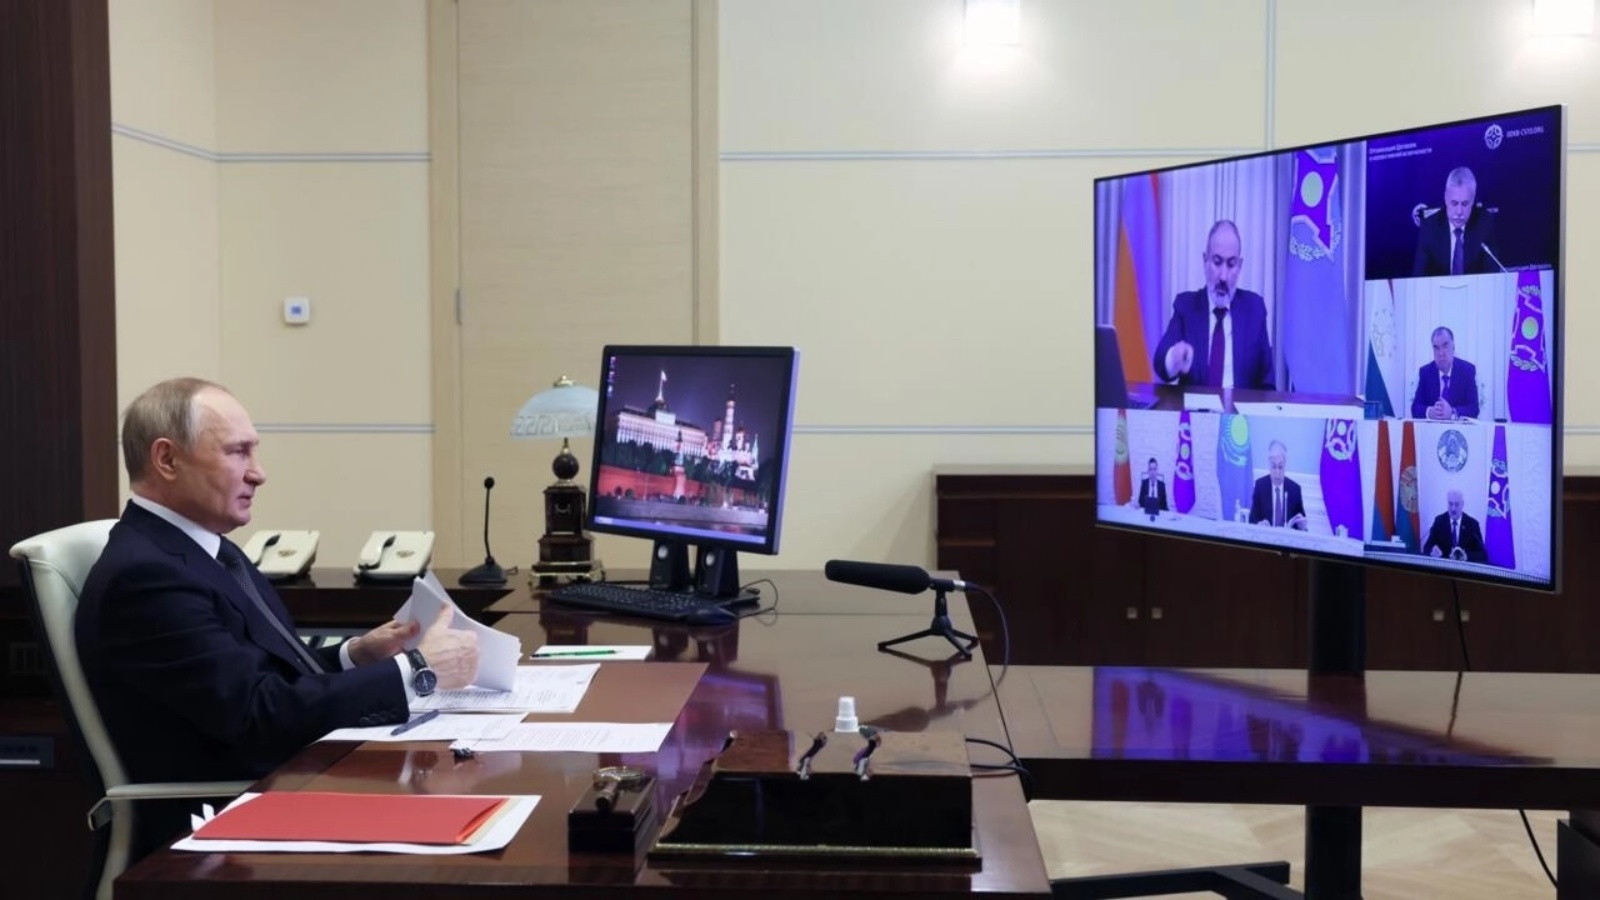 الرئيس الروسي فلاديمير بوتين يحضر لقاء مع قادة منظمة معاهدة الأمن الجماعي لبحث اجراءات دعم لارمينيا بعد اشتباكات على حدودها مع اذربيحان، خلال مؤتمر عبر الفيديو في 28 أكتوبر 2022 من مقره قرب موسكو